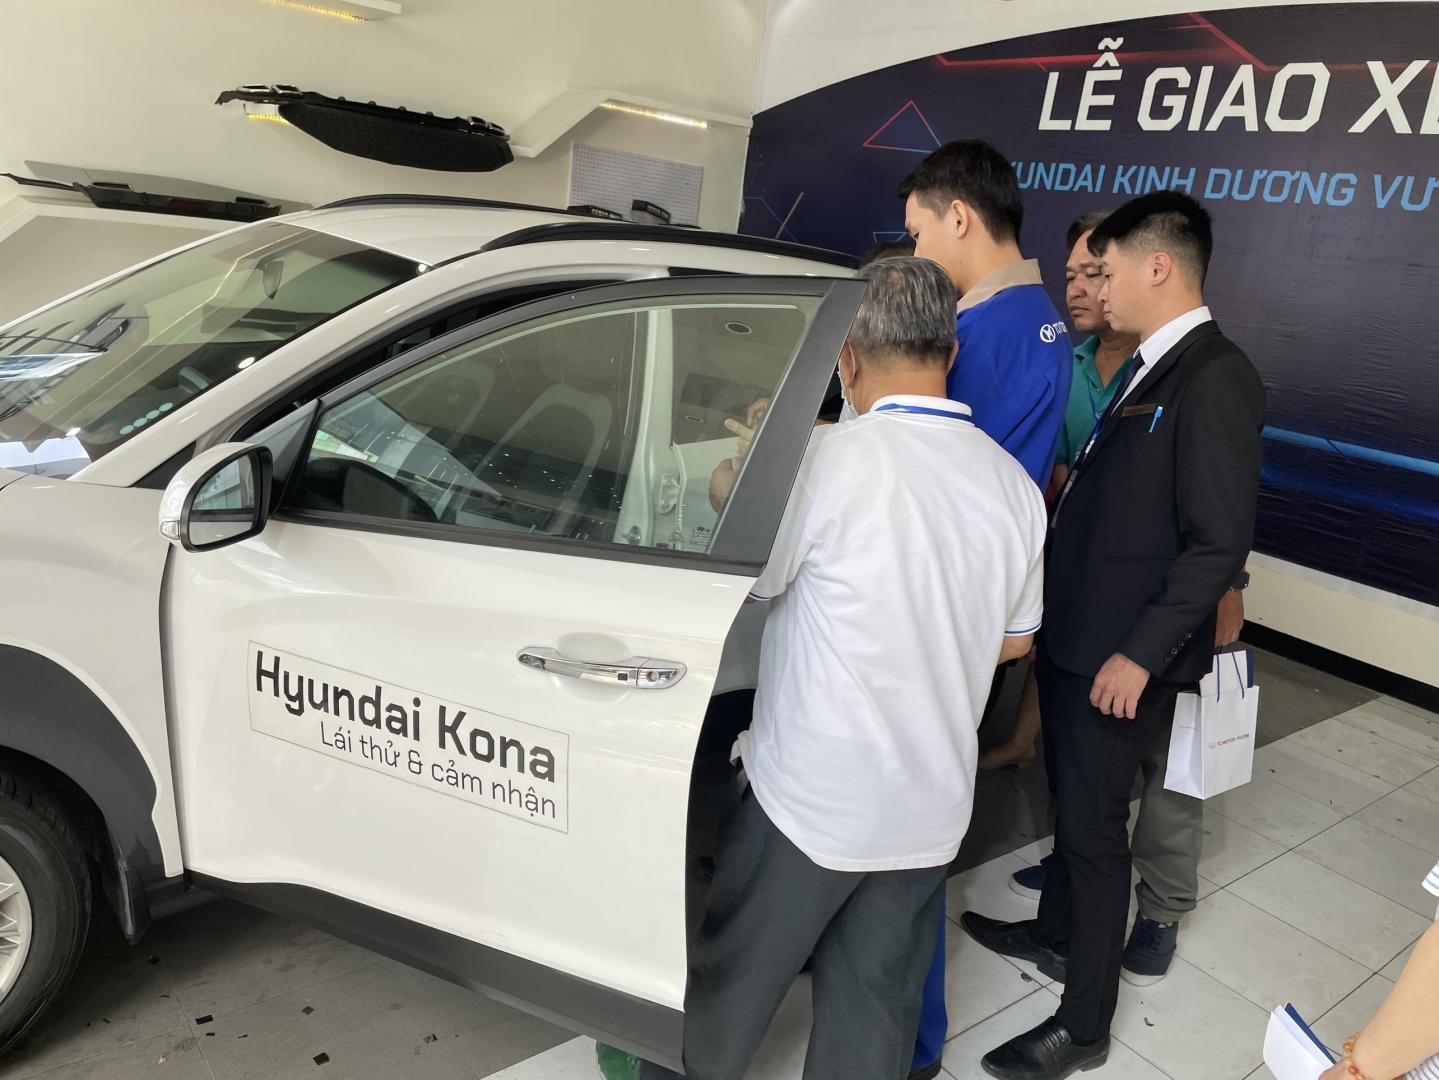 Chương trình  Hướng dẫn sử dụng xe an toàn  tại Hyundai Kinh Dương Vương diễn ra thành công tốt đẹp